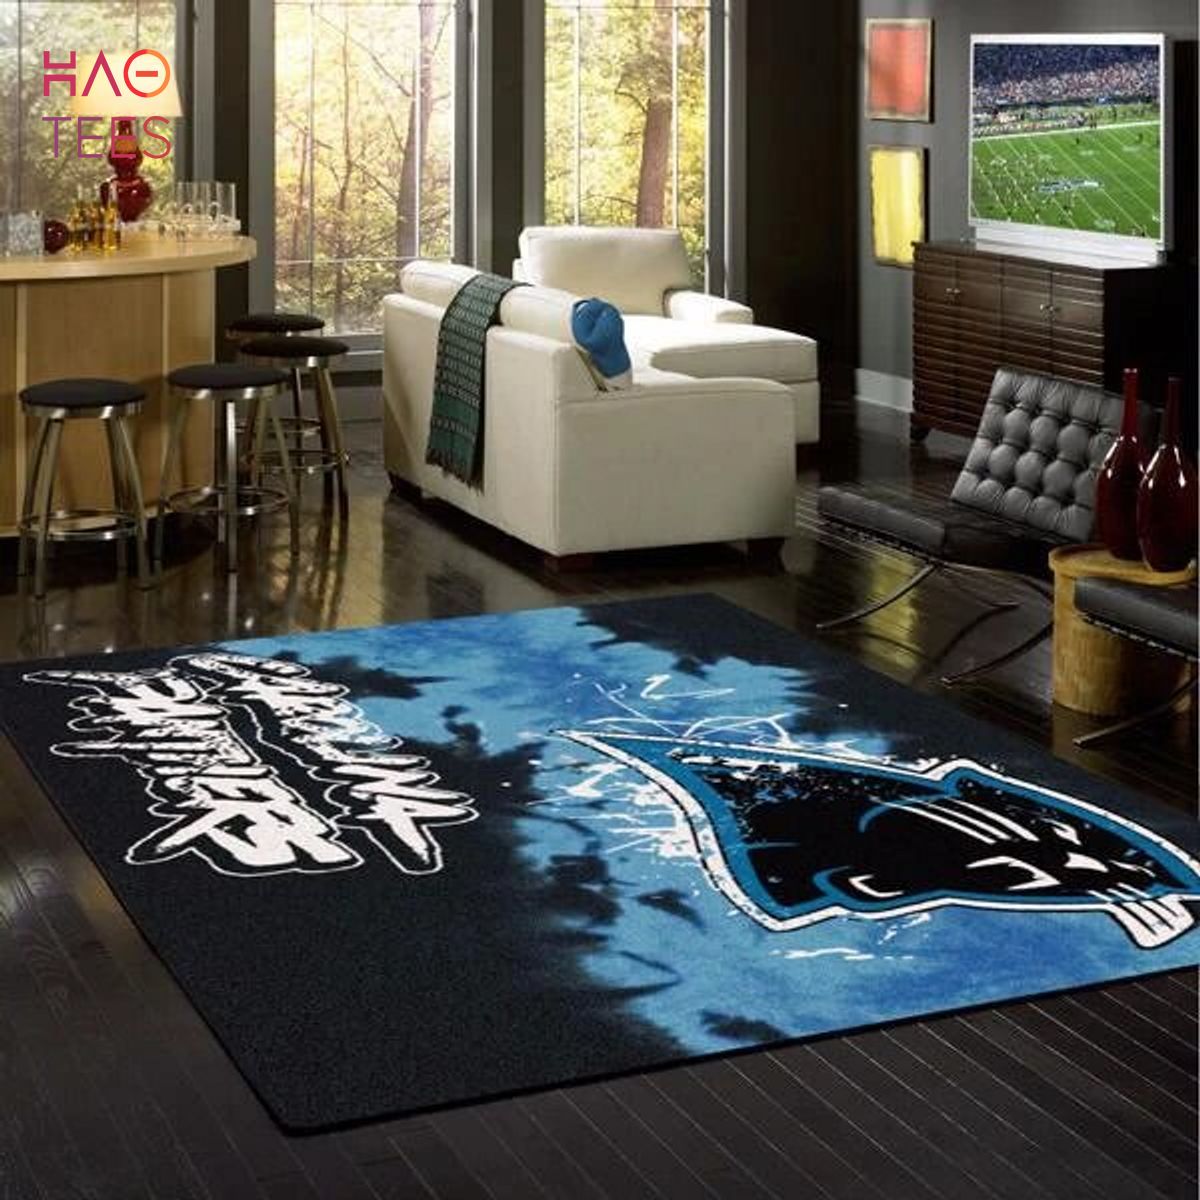 BEST Carolina Panthers Deandanecerse Carpet Living Room Rugs